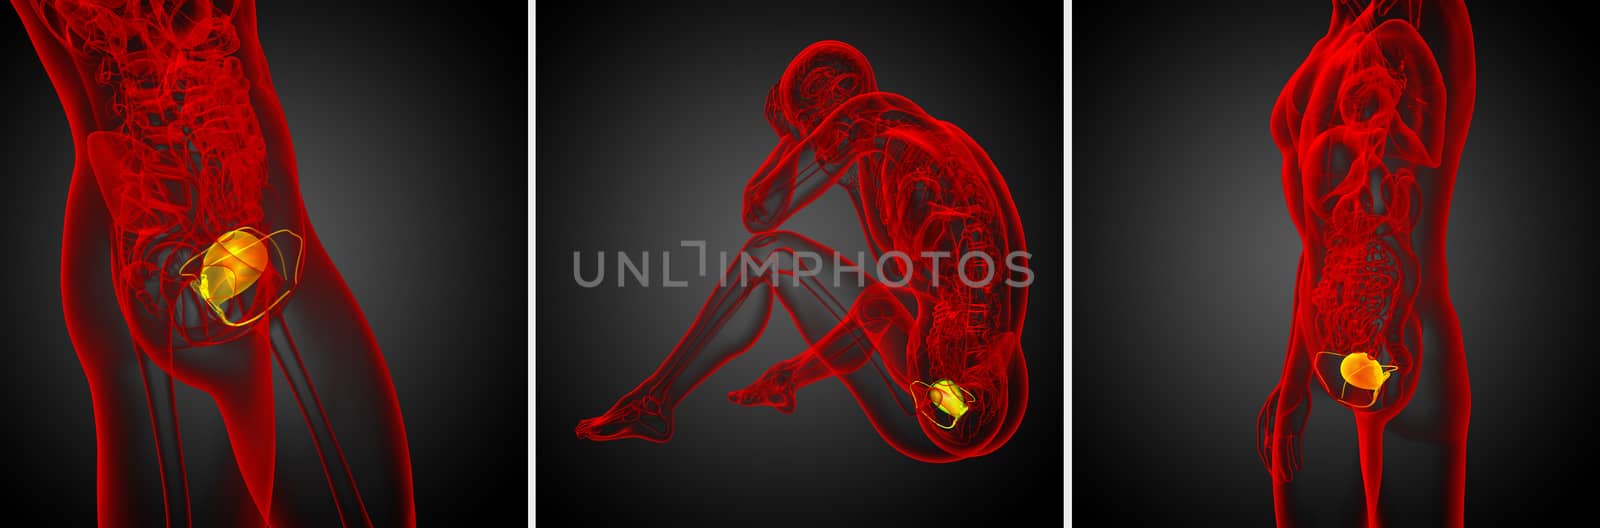 3d rendering medical illustration of the bladder